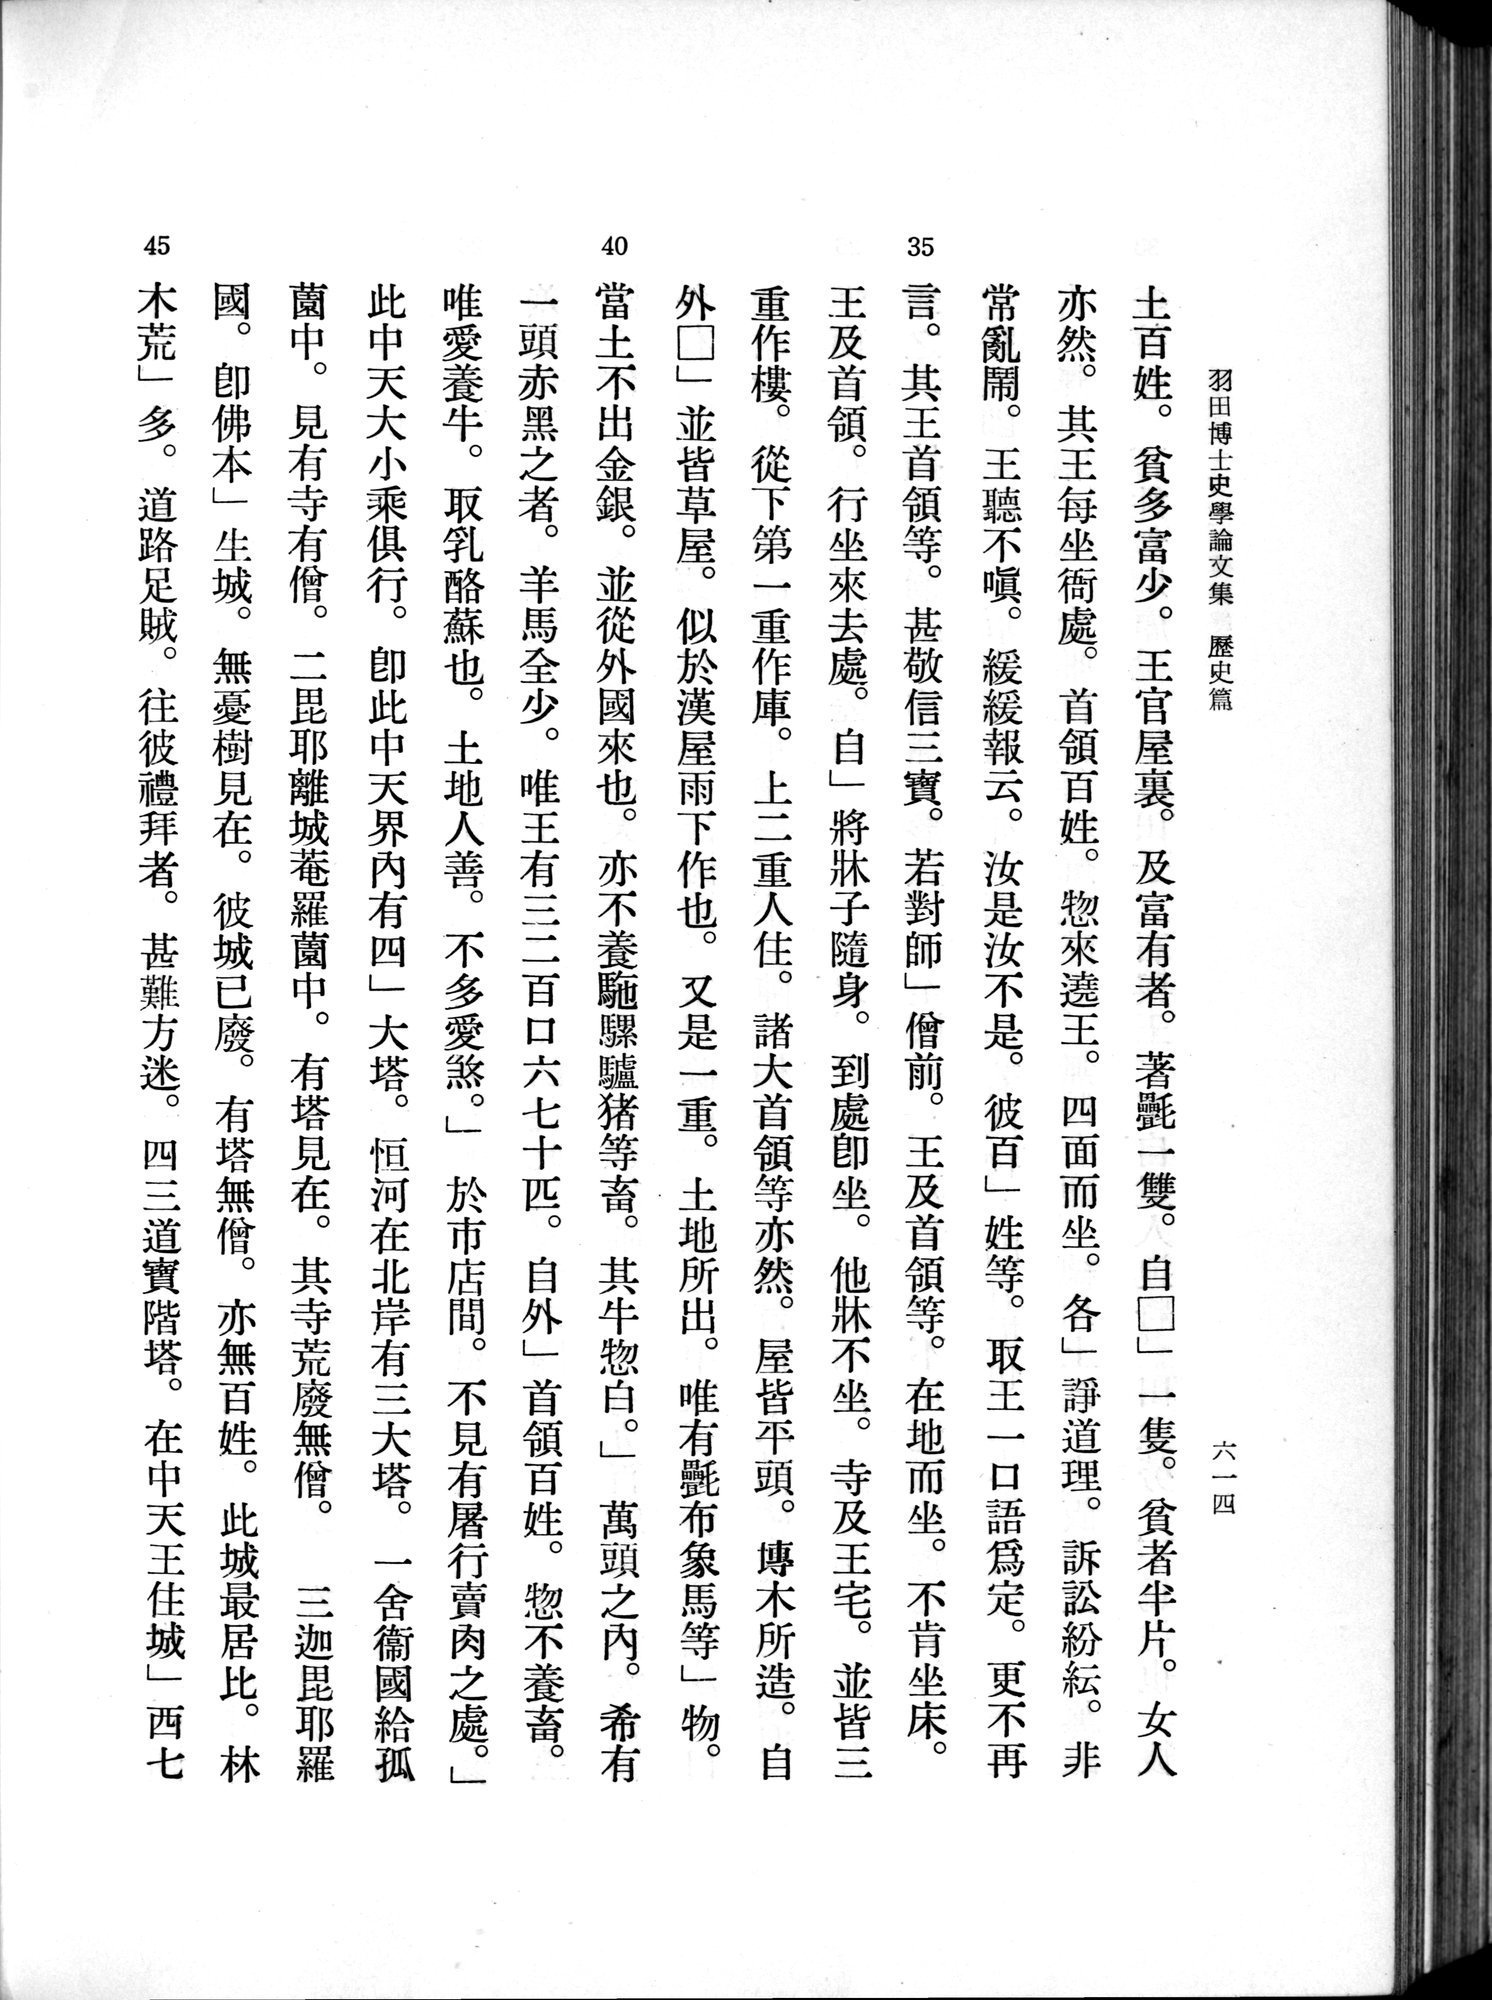 羽田博士史学論文集 : vol.1 / 652 ページ（白黒高解像度画像）